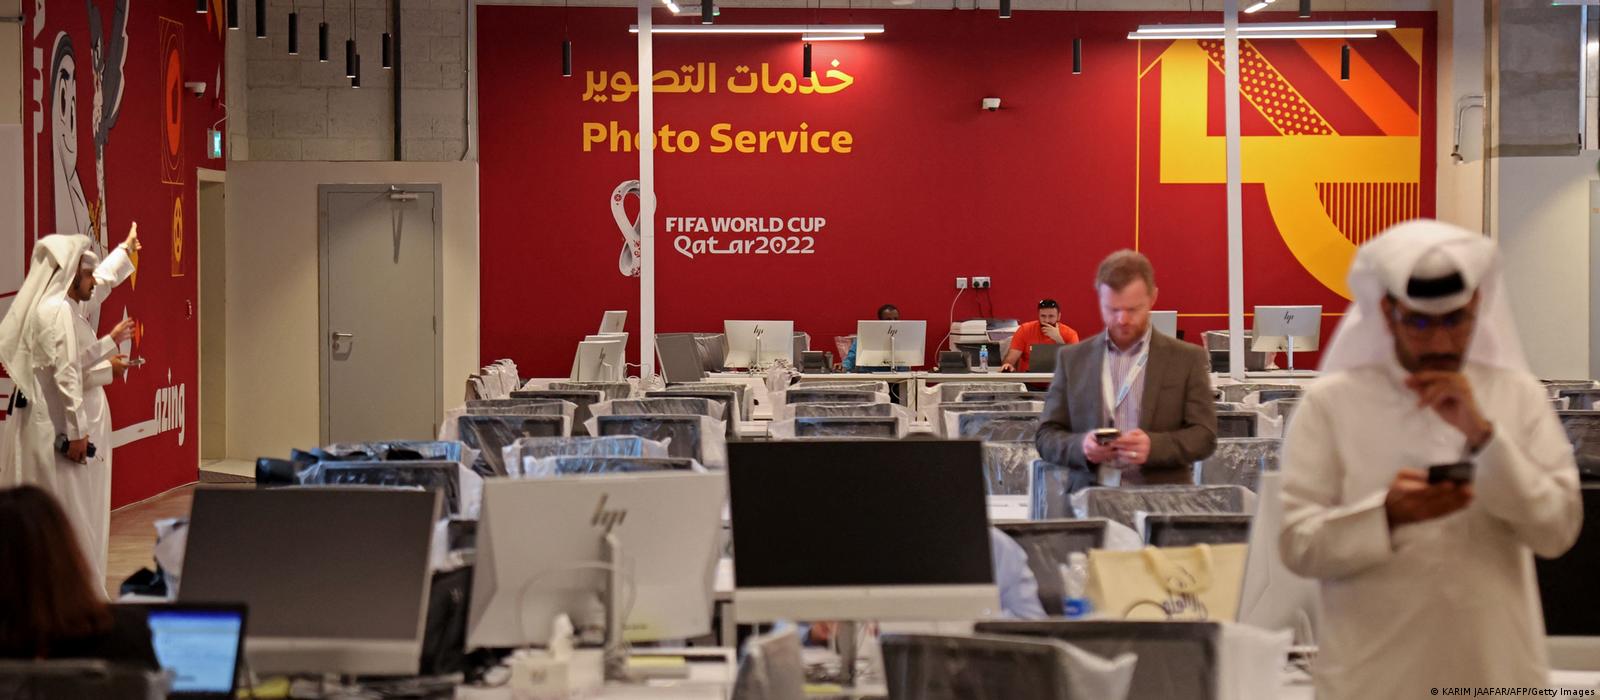 Bạn muốn biết sự thật về tự do báo chí tại chủ nhà World Cup Qatar? Hình ảnh liên quan sẽ giới thiệu cho bạn một video tài liệu đầy chất lượng và chân thật từ DW. Hãy cùng đến và khám phá ngay!